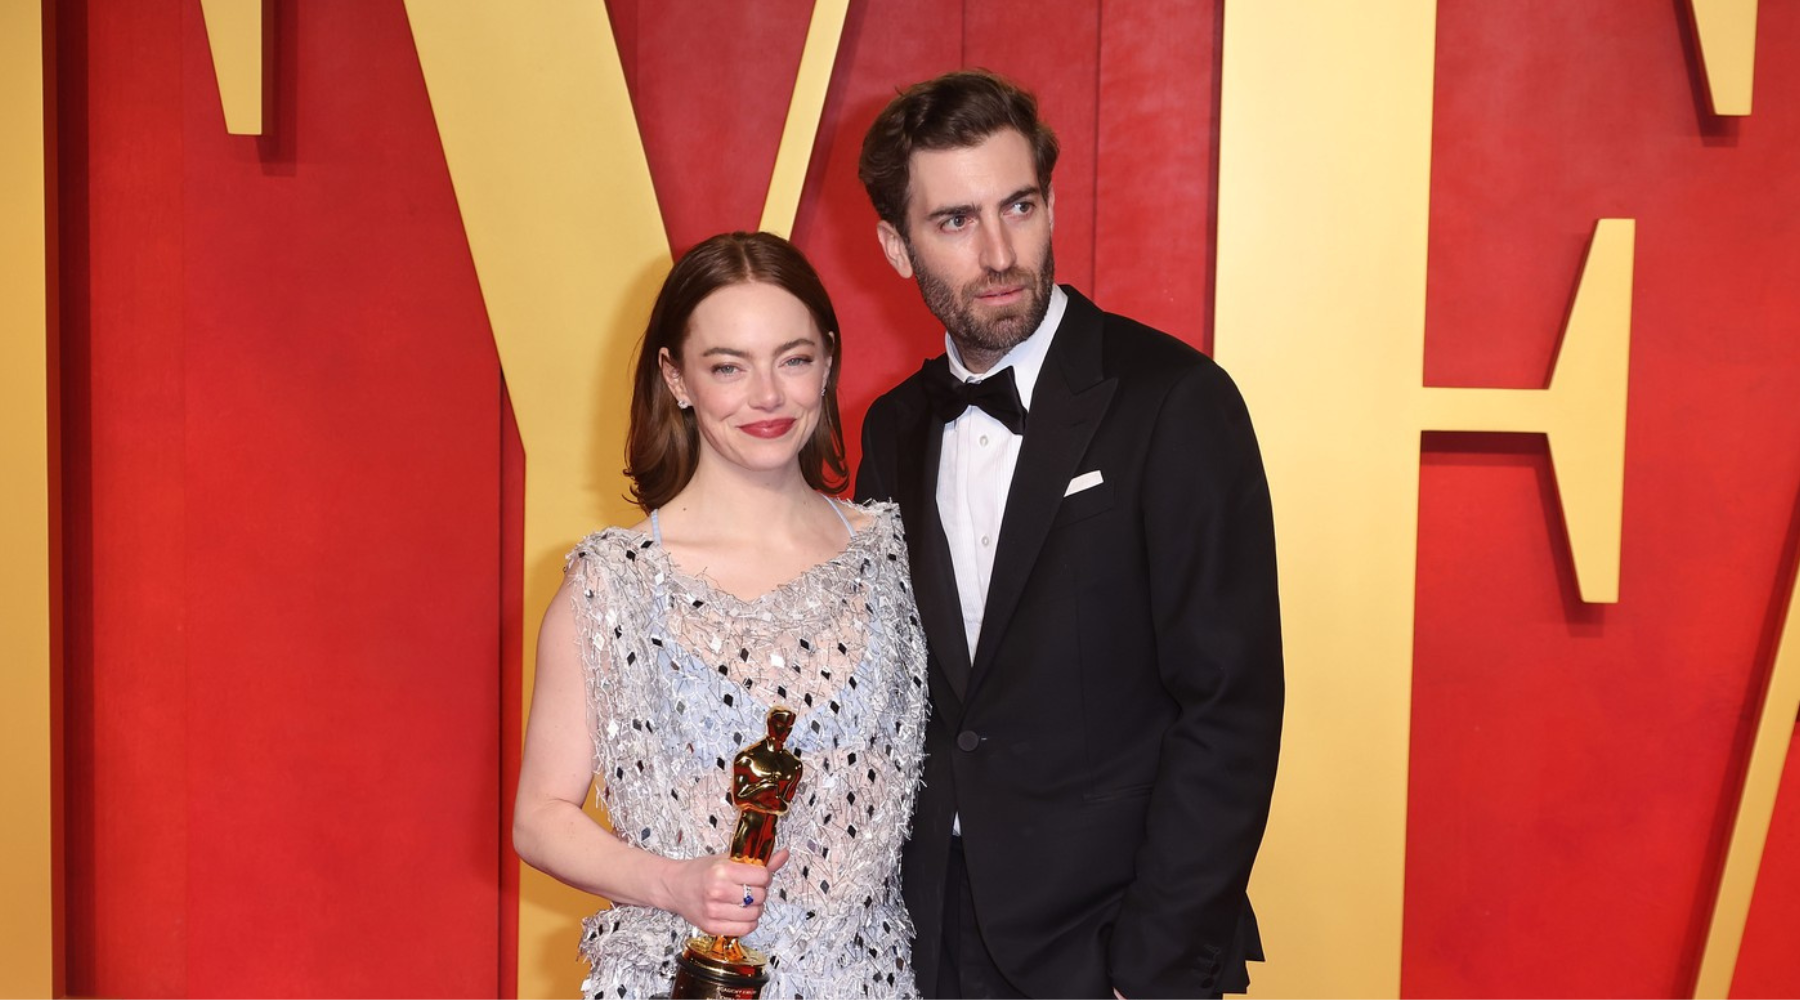 Da li Emma Stone ove godine snima još jedan film – koji će režirati njen muž?